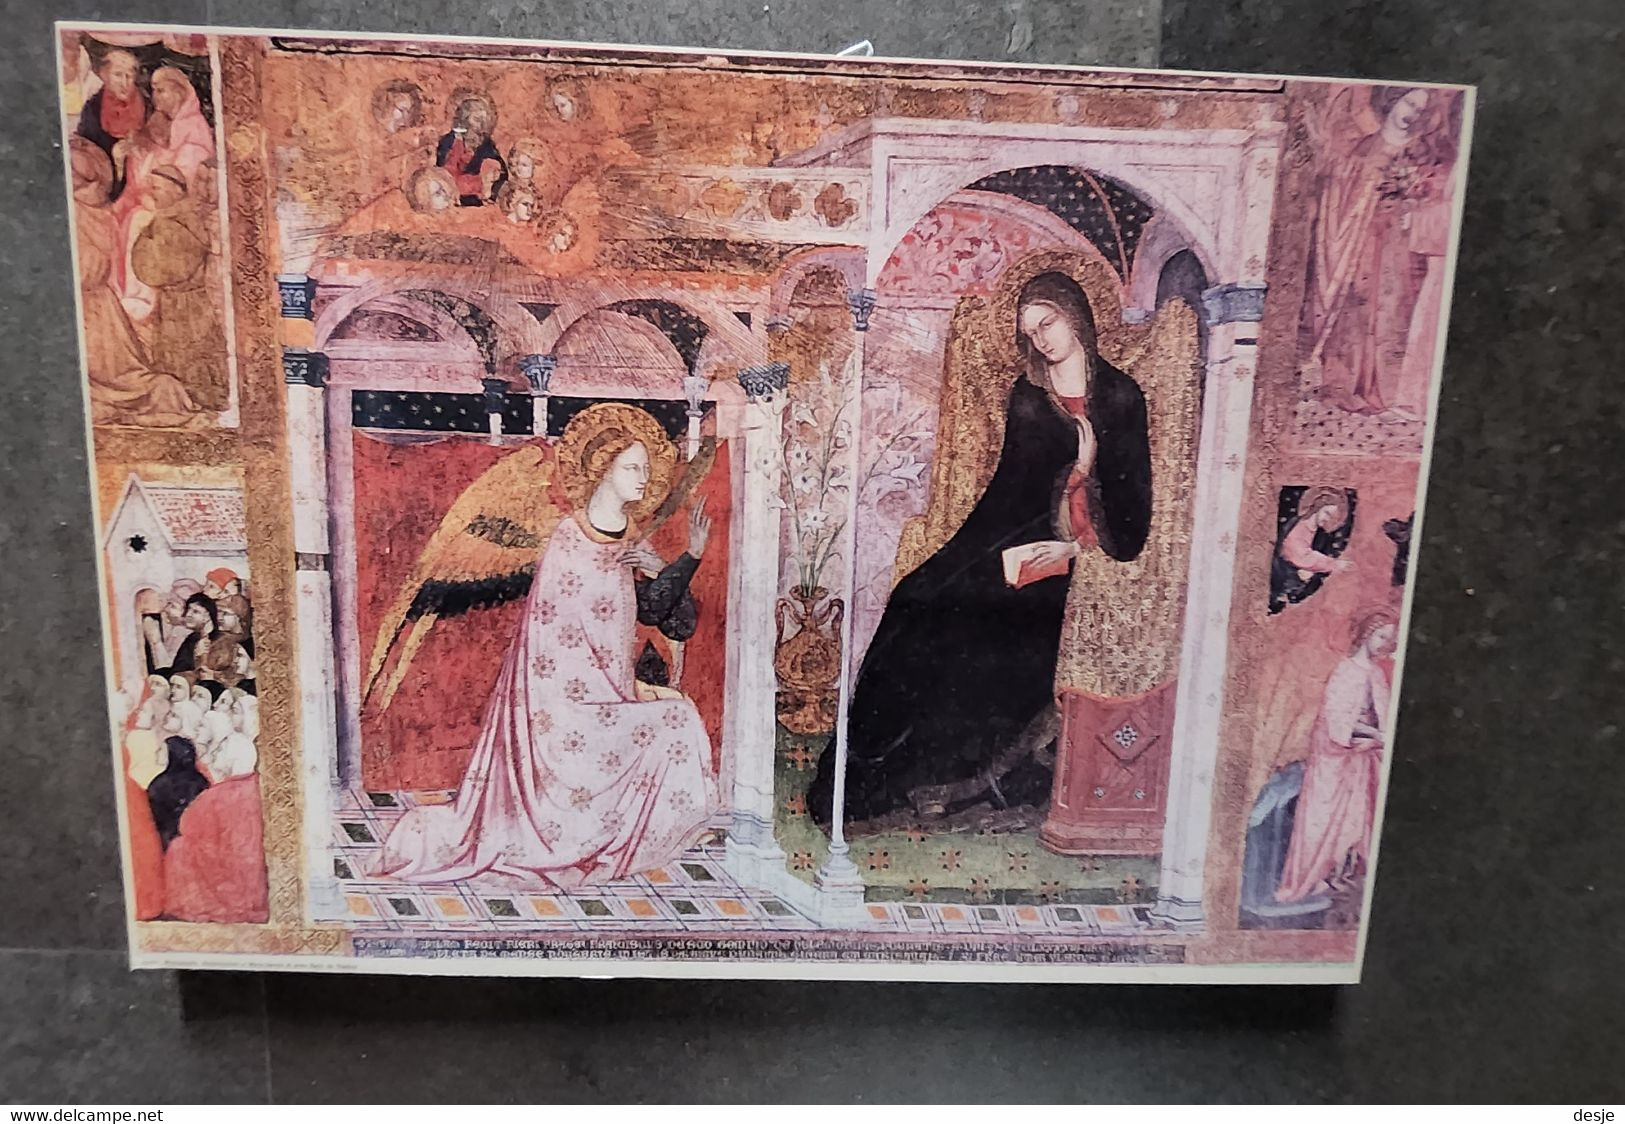 Icoon Maria Boodschap Of De Aankondiging Van De Heer (25 Maart) Naar Een Fresco Van Itario Da Vitario Uit 1393 - Huiles